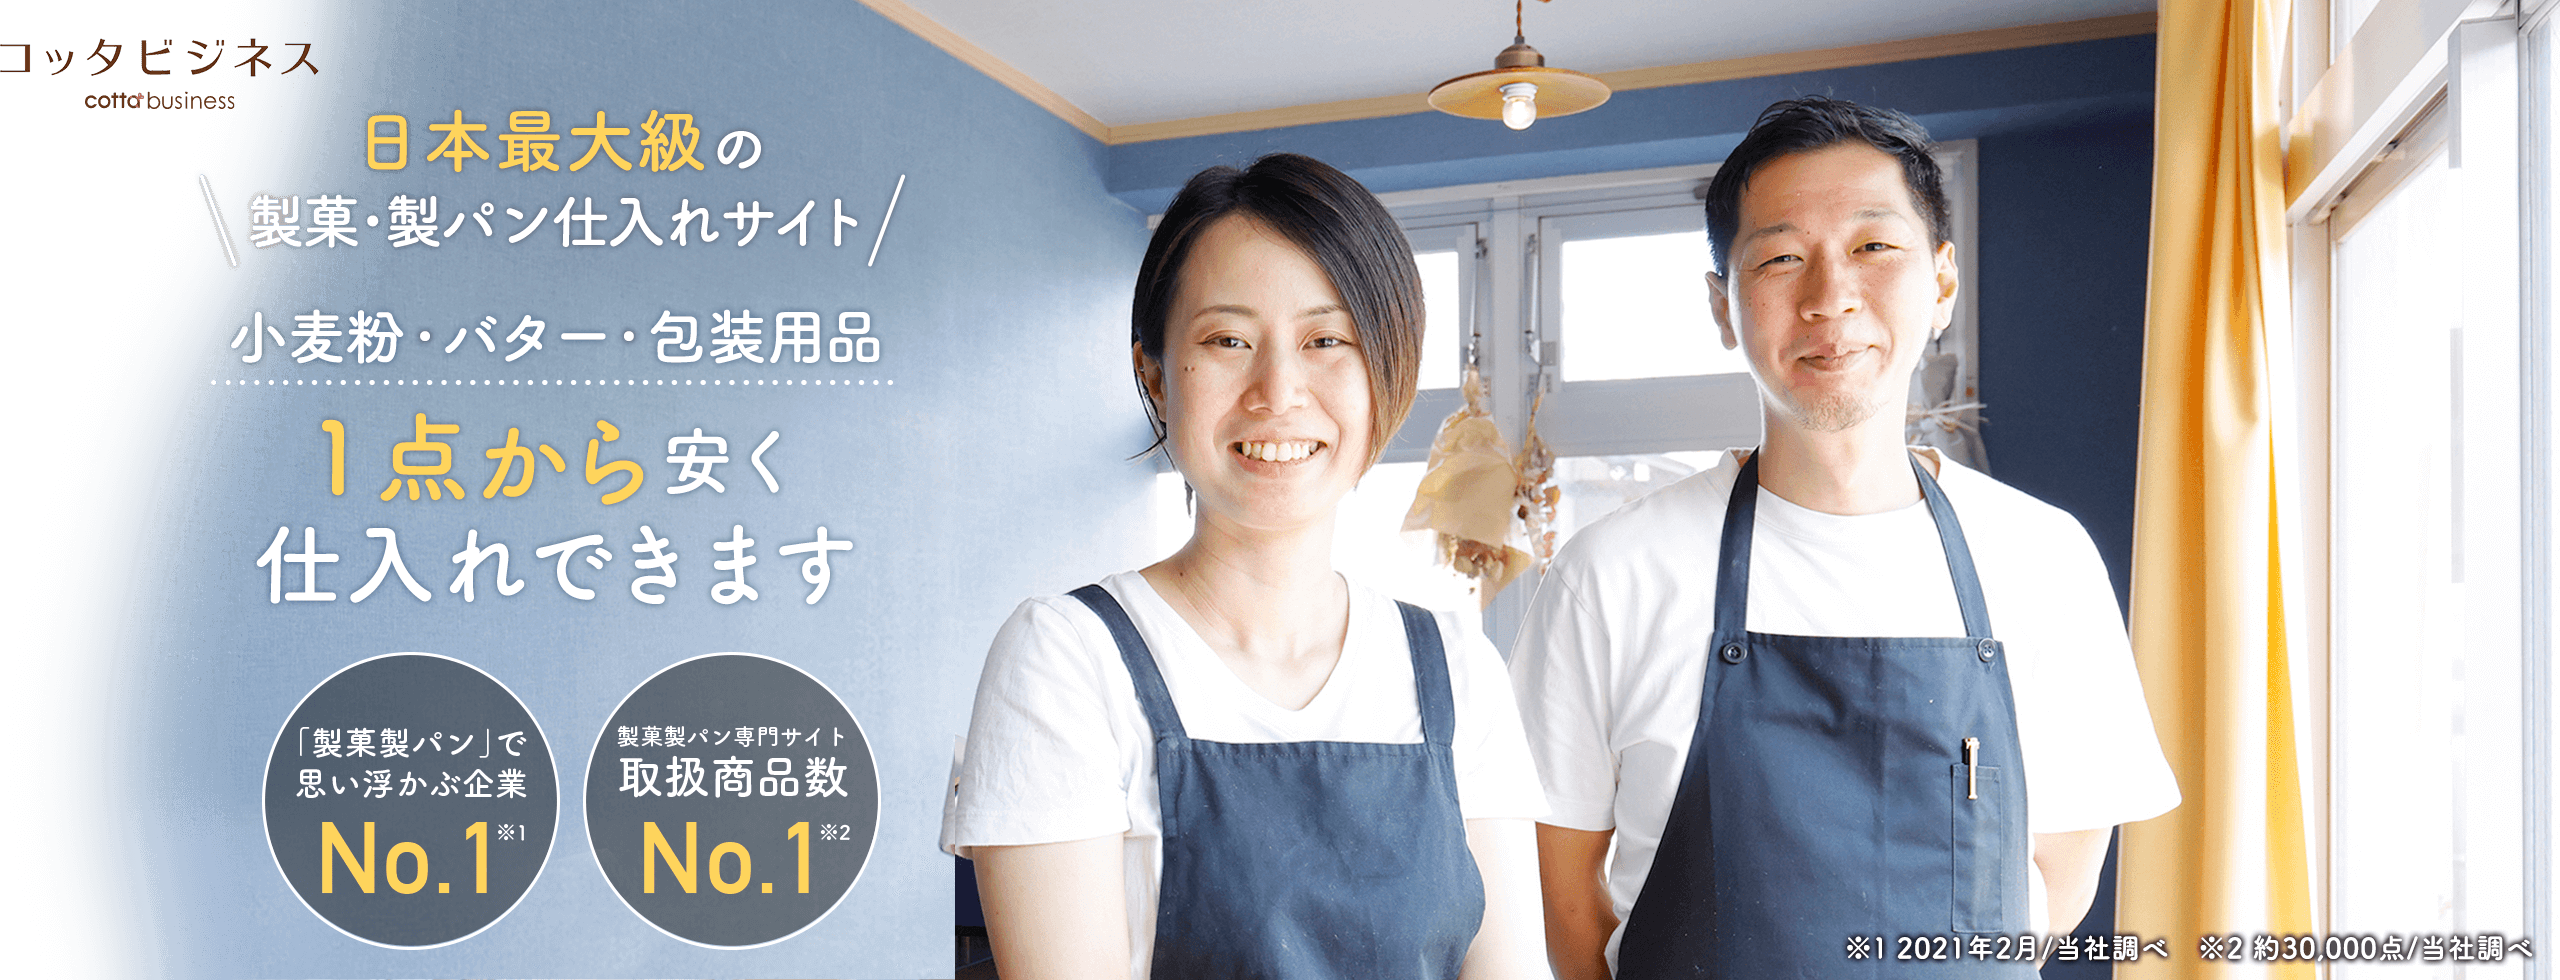 コッタビジネス cotta business 日本最大級の製菓・製パン仕入れサイト 小麦粉・バター・包装用品 1点から安く仕入れできます